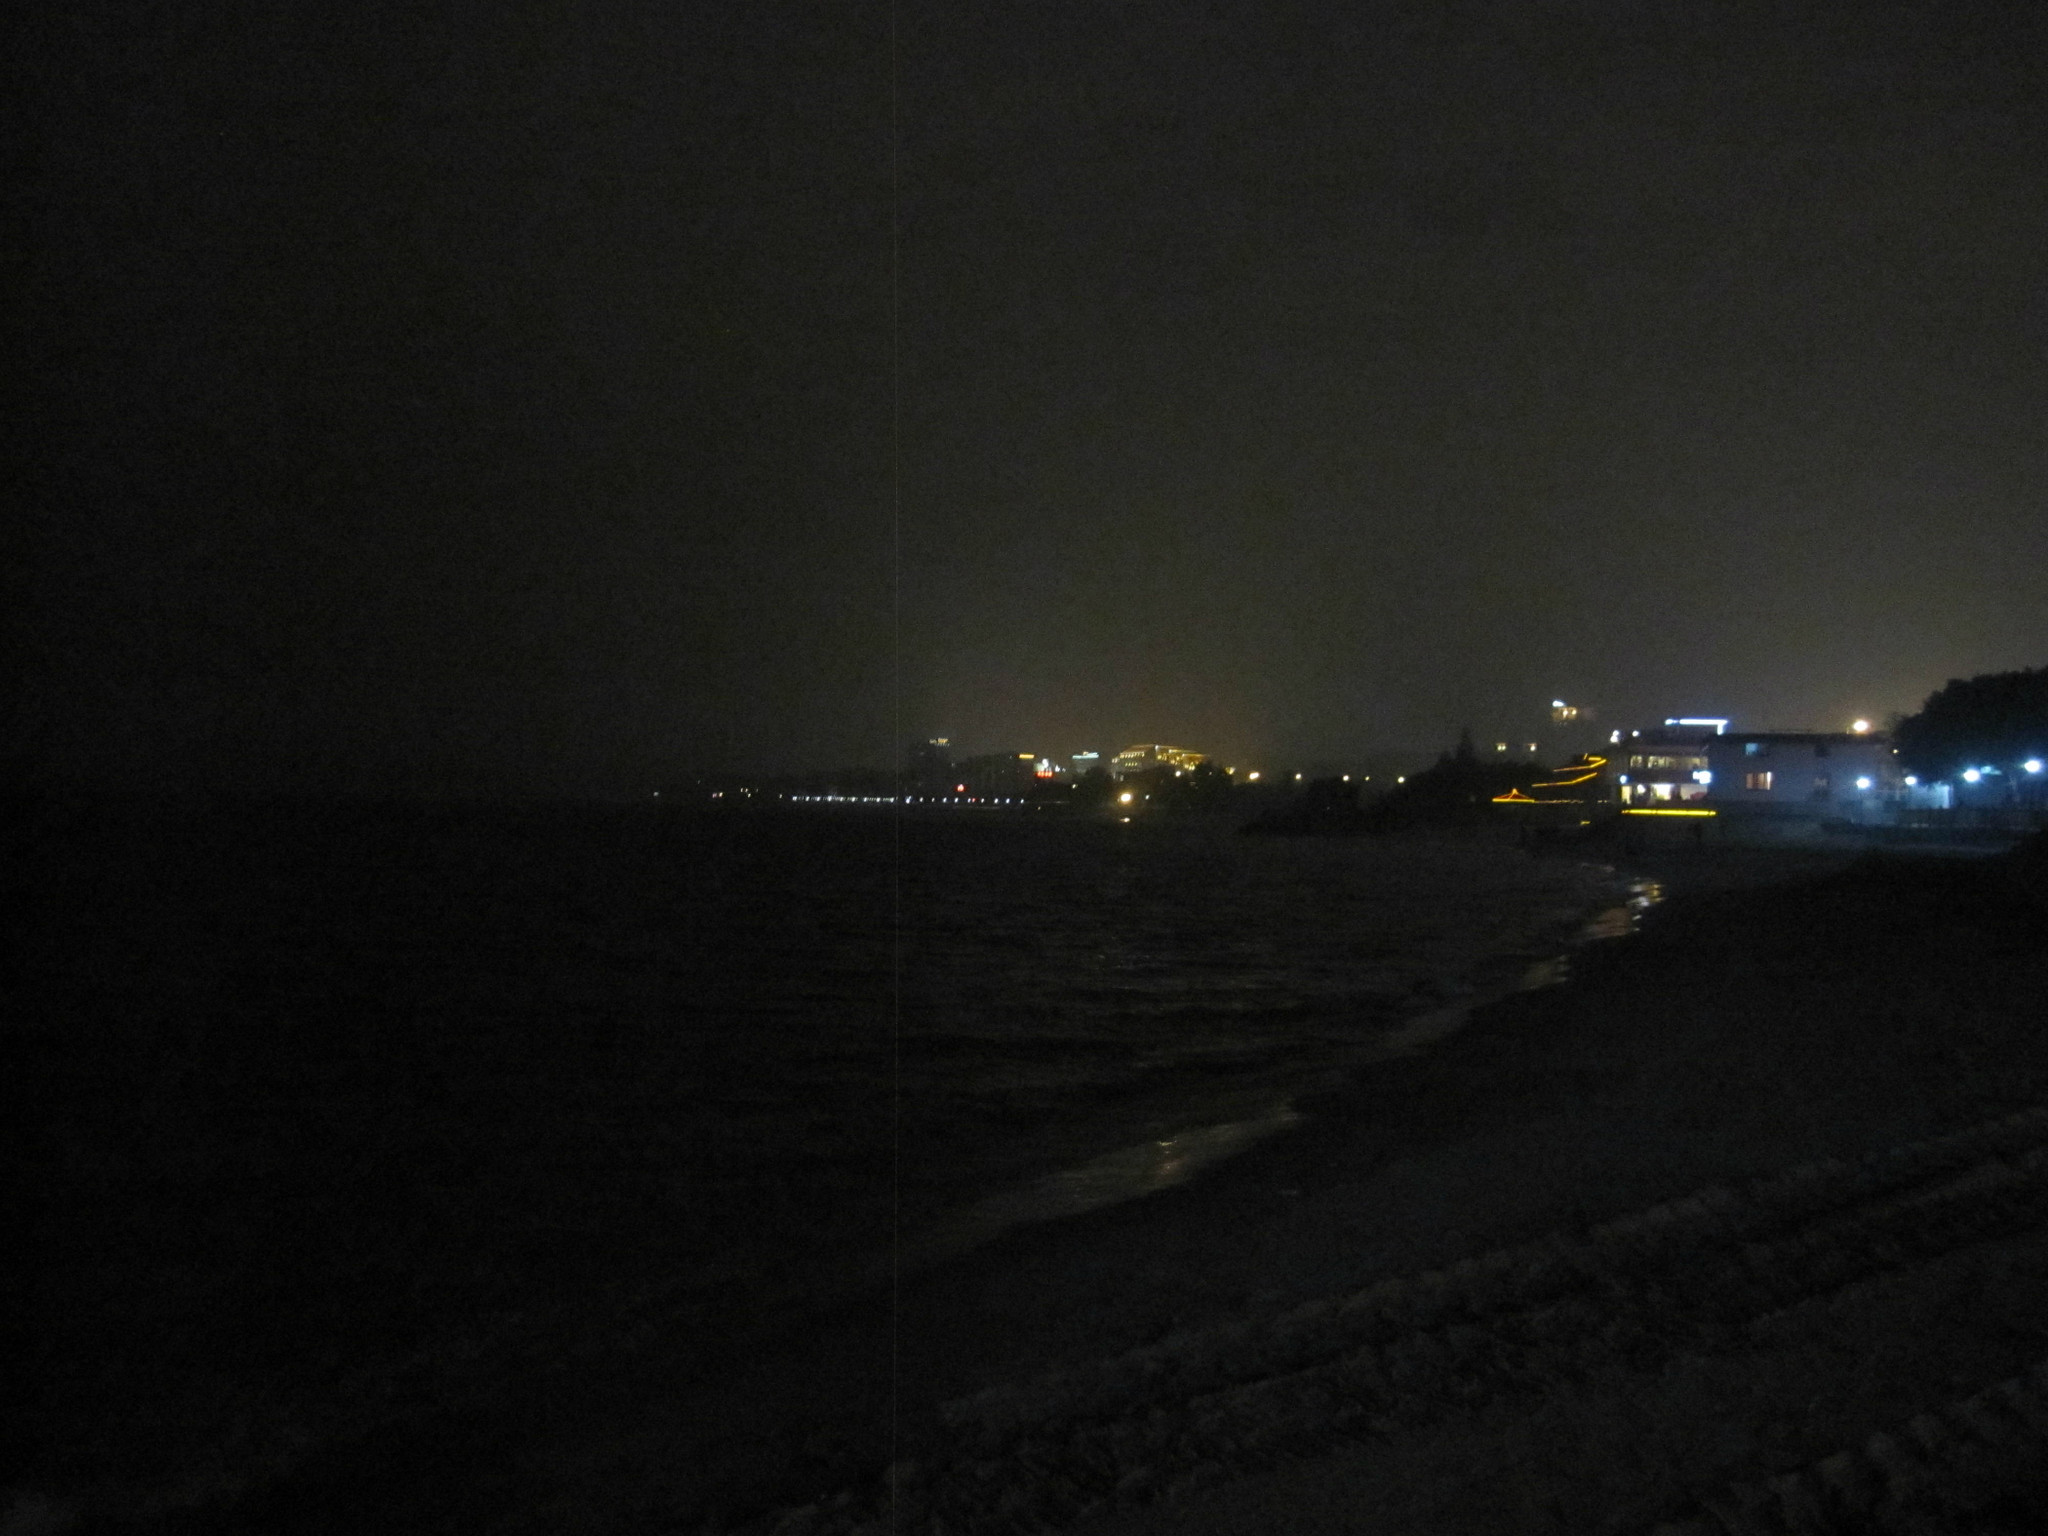 灰蒙蒙的,远处的灯光映着才勉强看清海浪,原来晚上一个人在海边漫步也